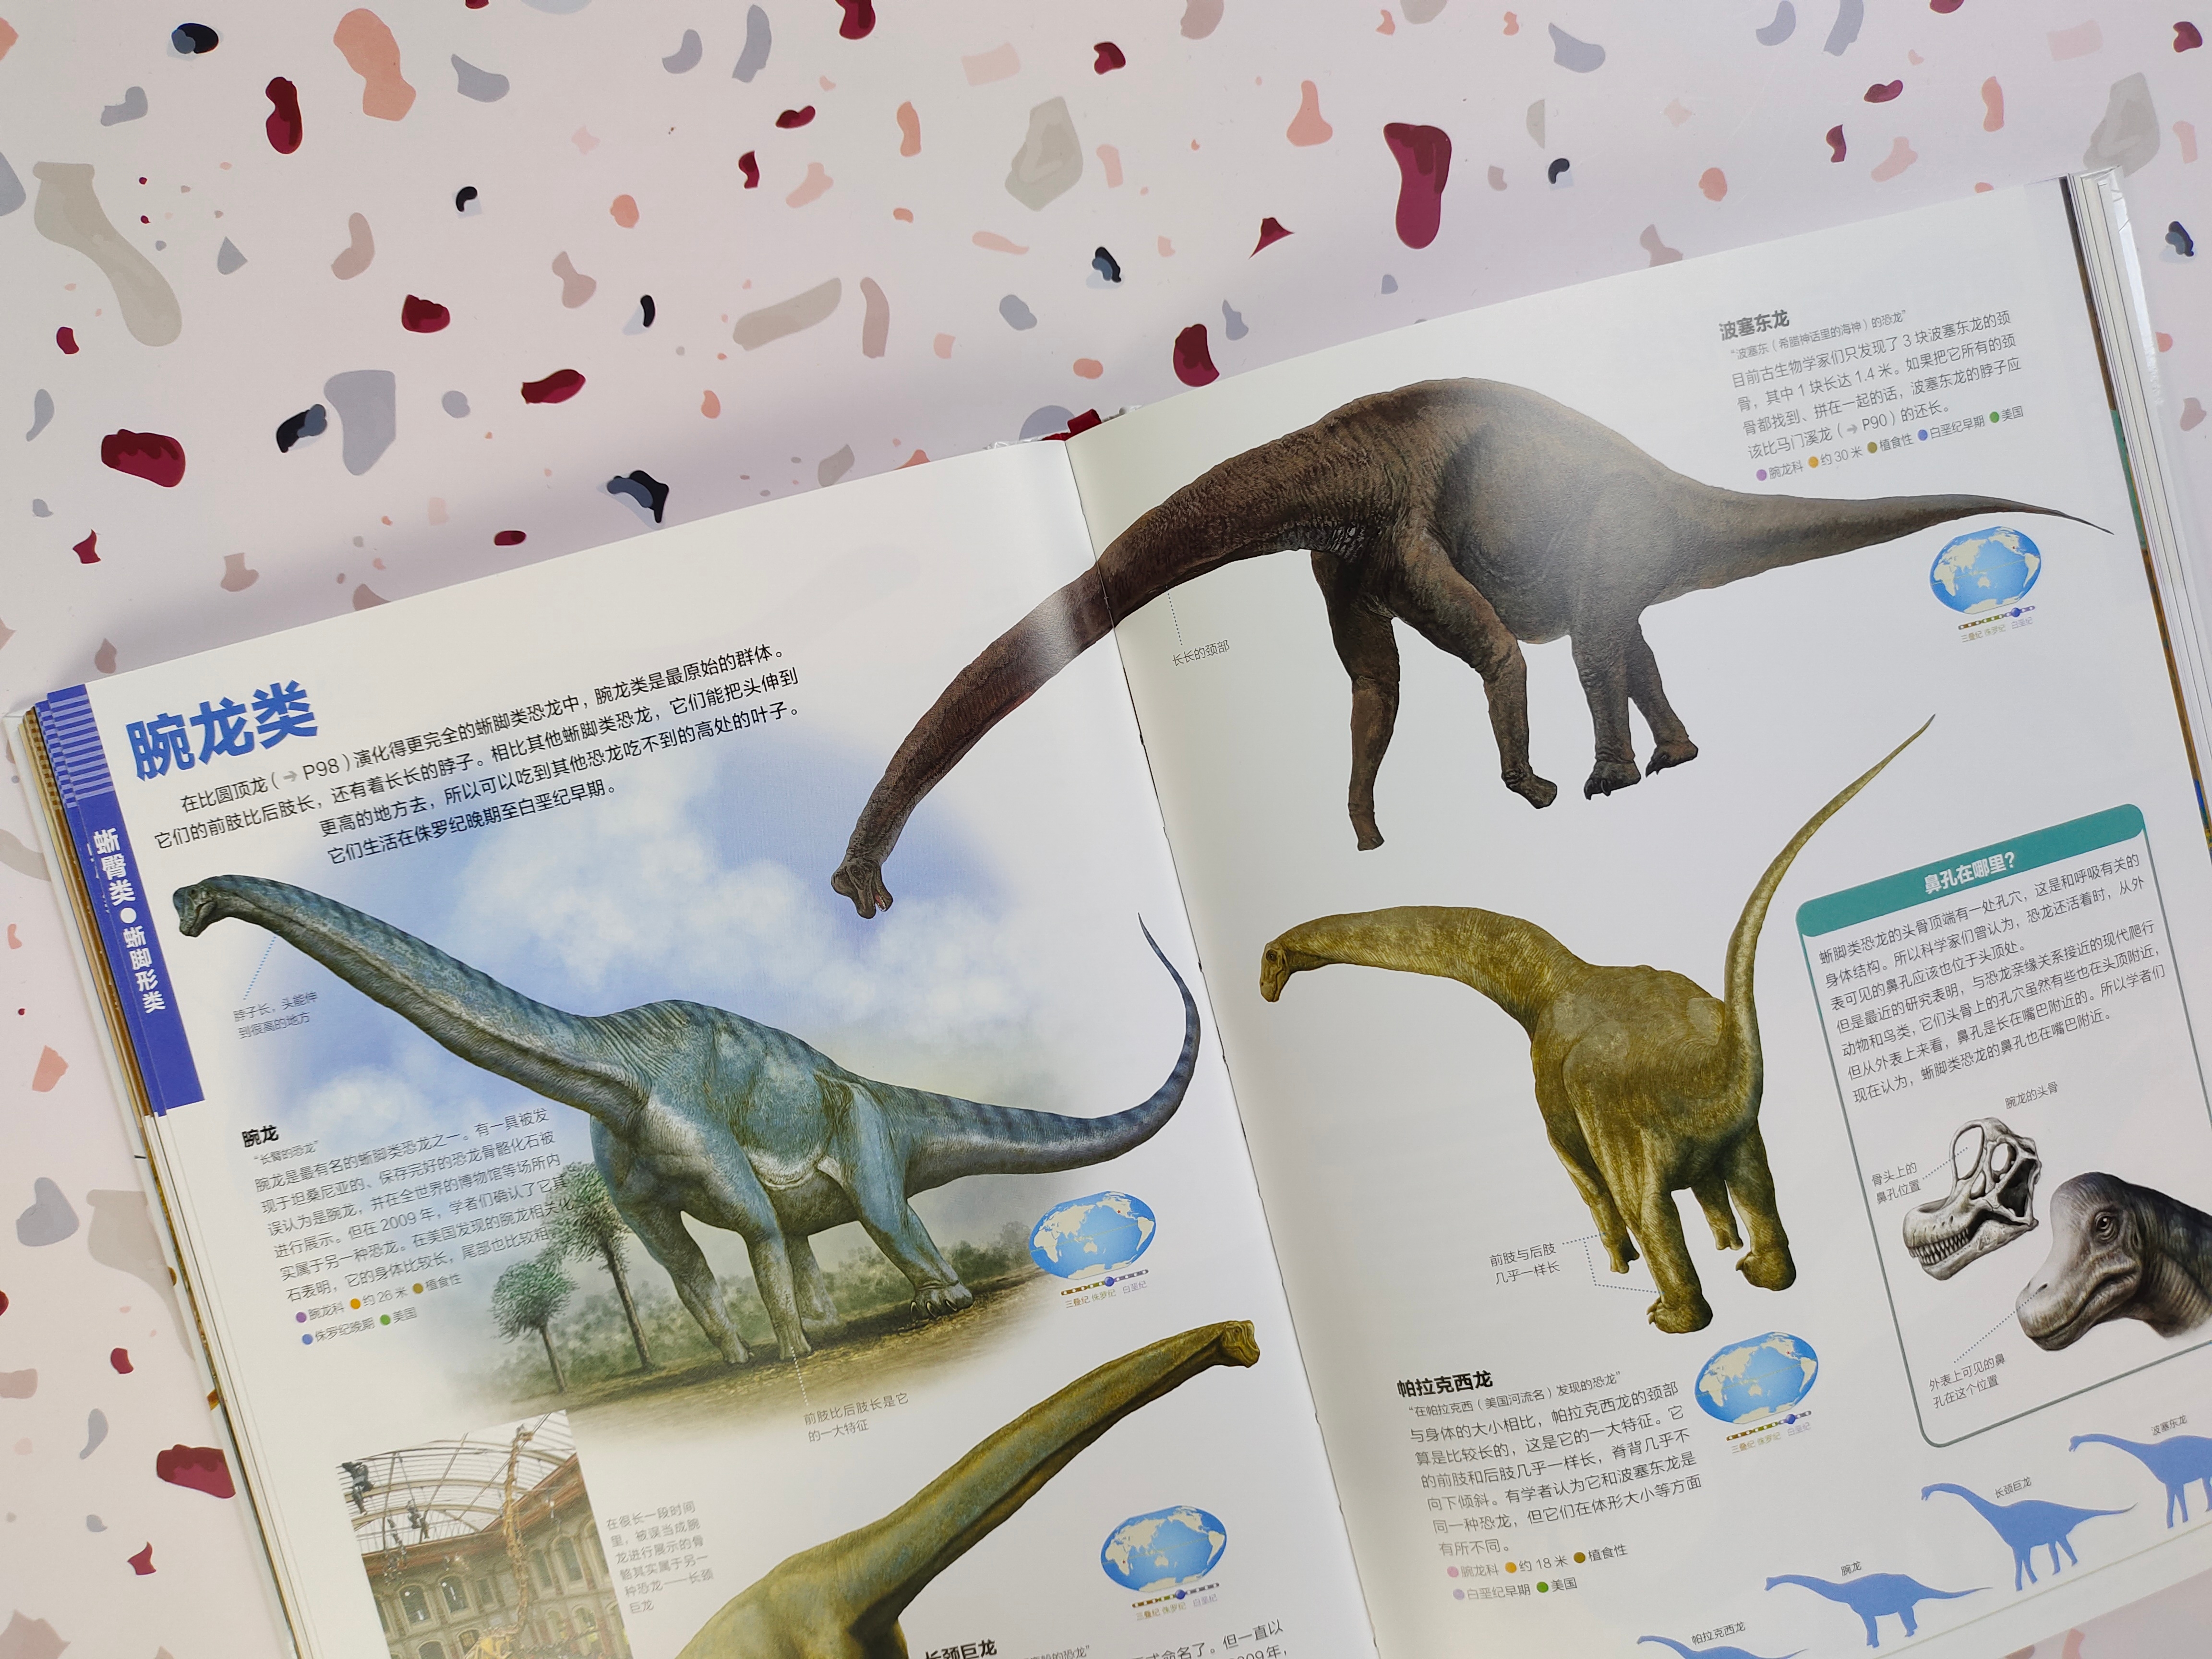 如果你是一位恐龙爱好者，千万不能错过这本恐龙百科全书